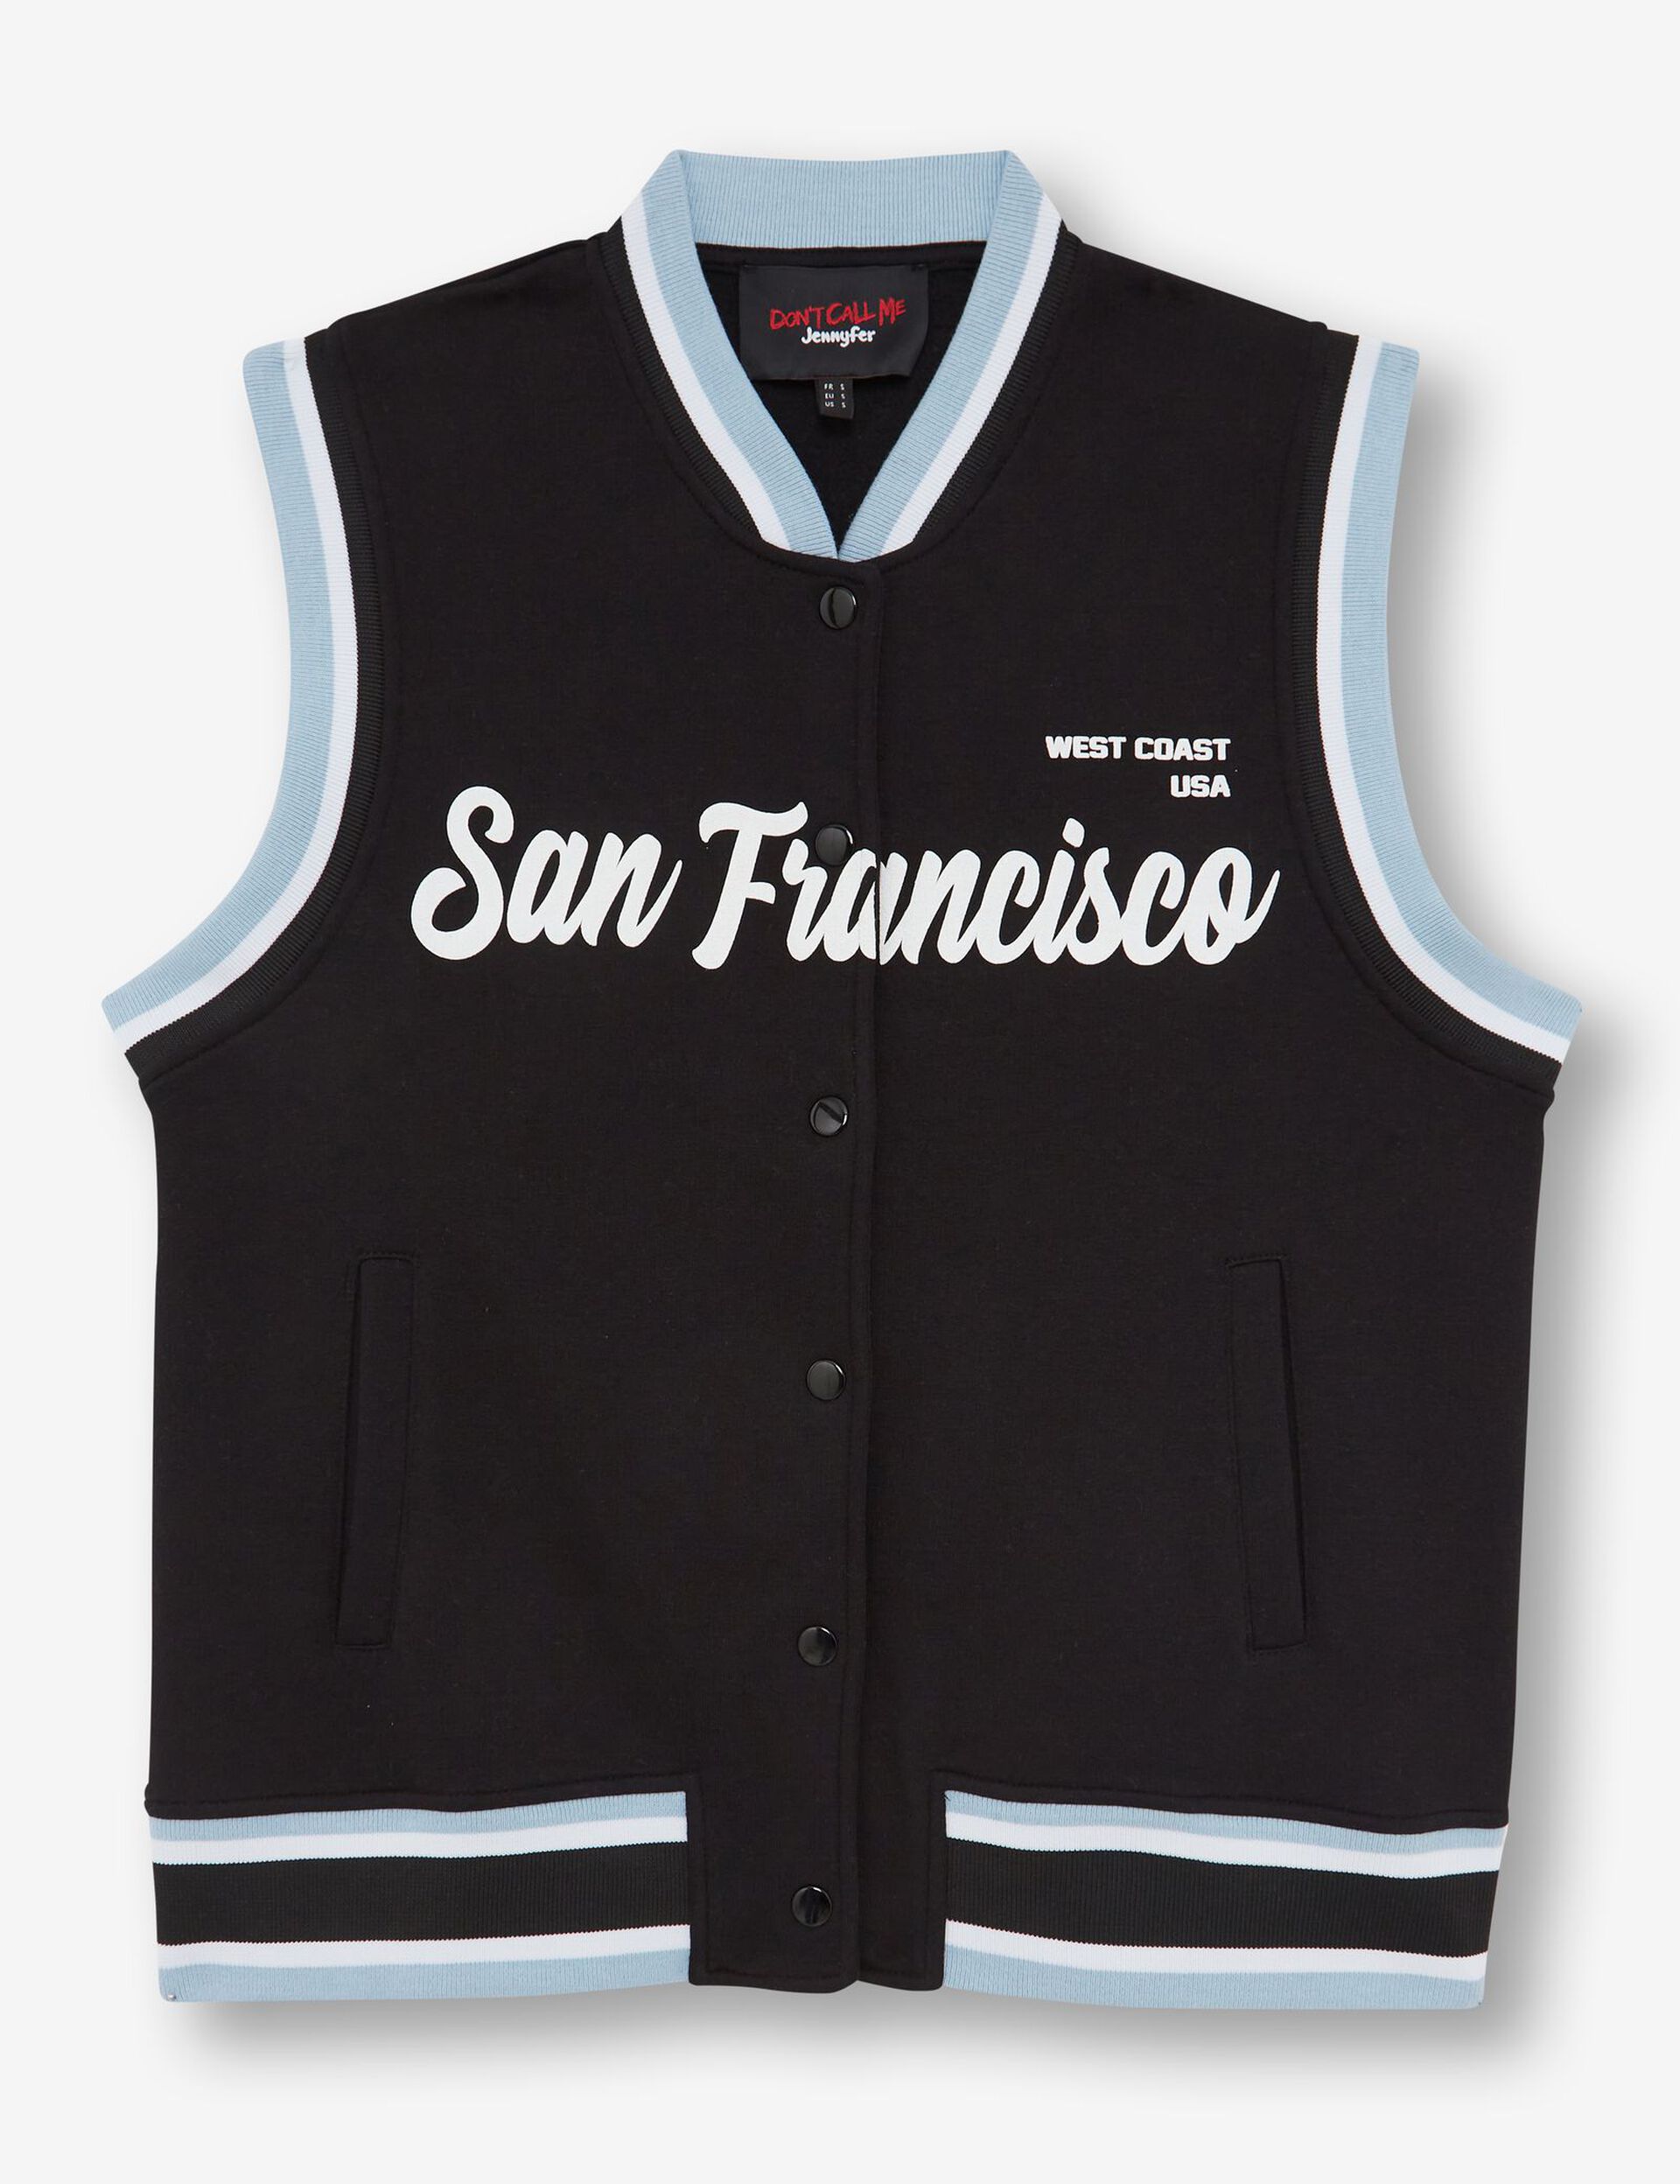 Sleeveless San Francisco varsity jacket